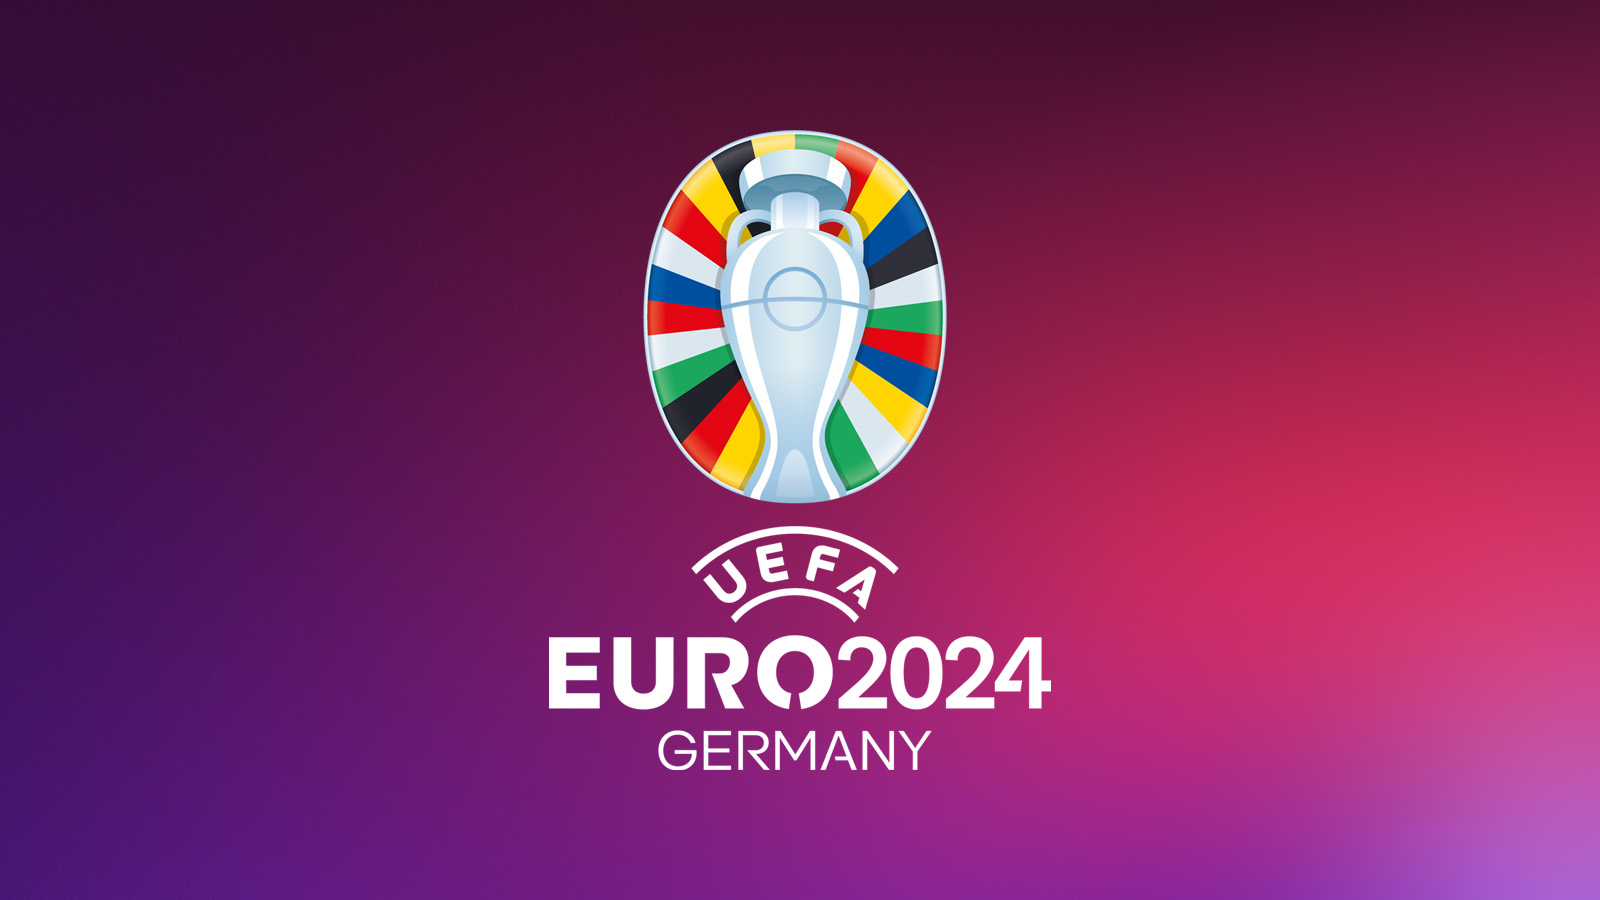 Uefa Euro 2024 